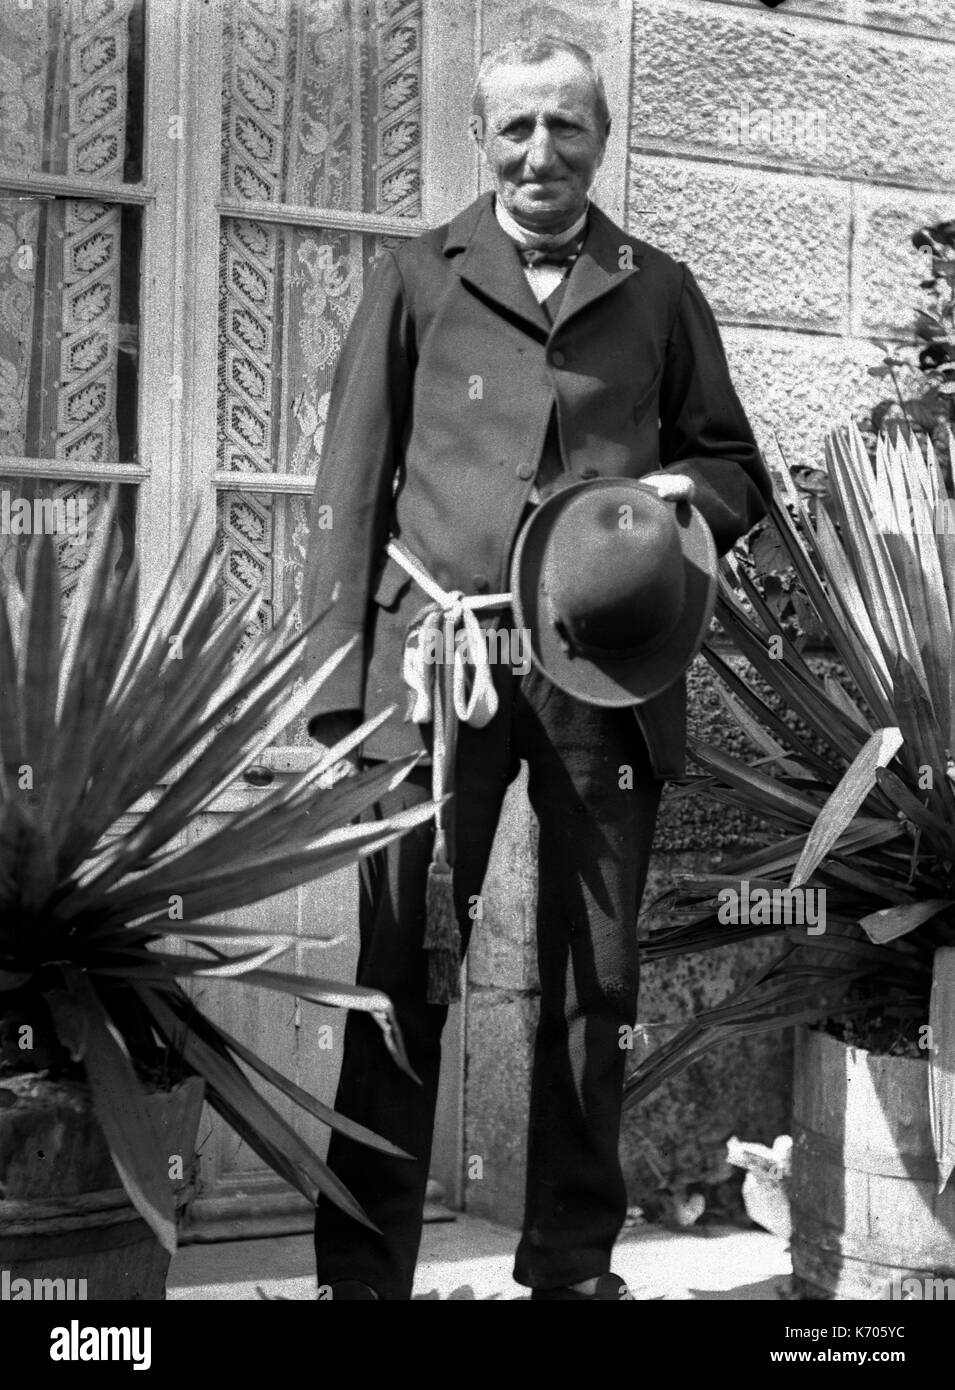 AJAXNETPHOTO. 1891-1910 (ca.). Frankreich. - Porträt eines älteren Herrn HOLDING einen Hut tragen eine SCHÄRPE STAND DRAUSSEN VOR EINEM HAUS FENSTER ZWISCHEN TOPFPFLANZEN. Fotograf: unbekannt © DIGITAL IMAGE COPYRIGHT AJAX VINTAGE BILDARCHIV QUELLE: AJAX VINTAGE BILDARCHIV SAMMLUNG REF: AVL FRA 1890 B29 X1227 Stockfoto